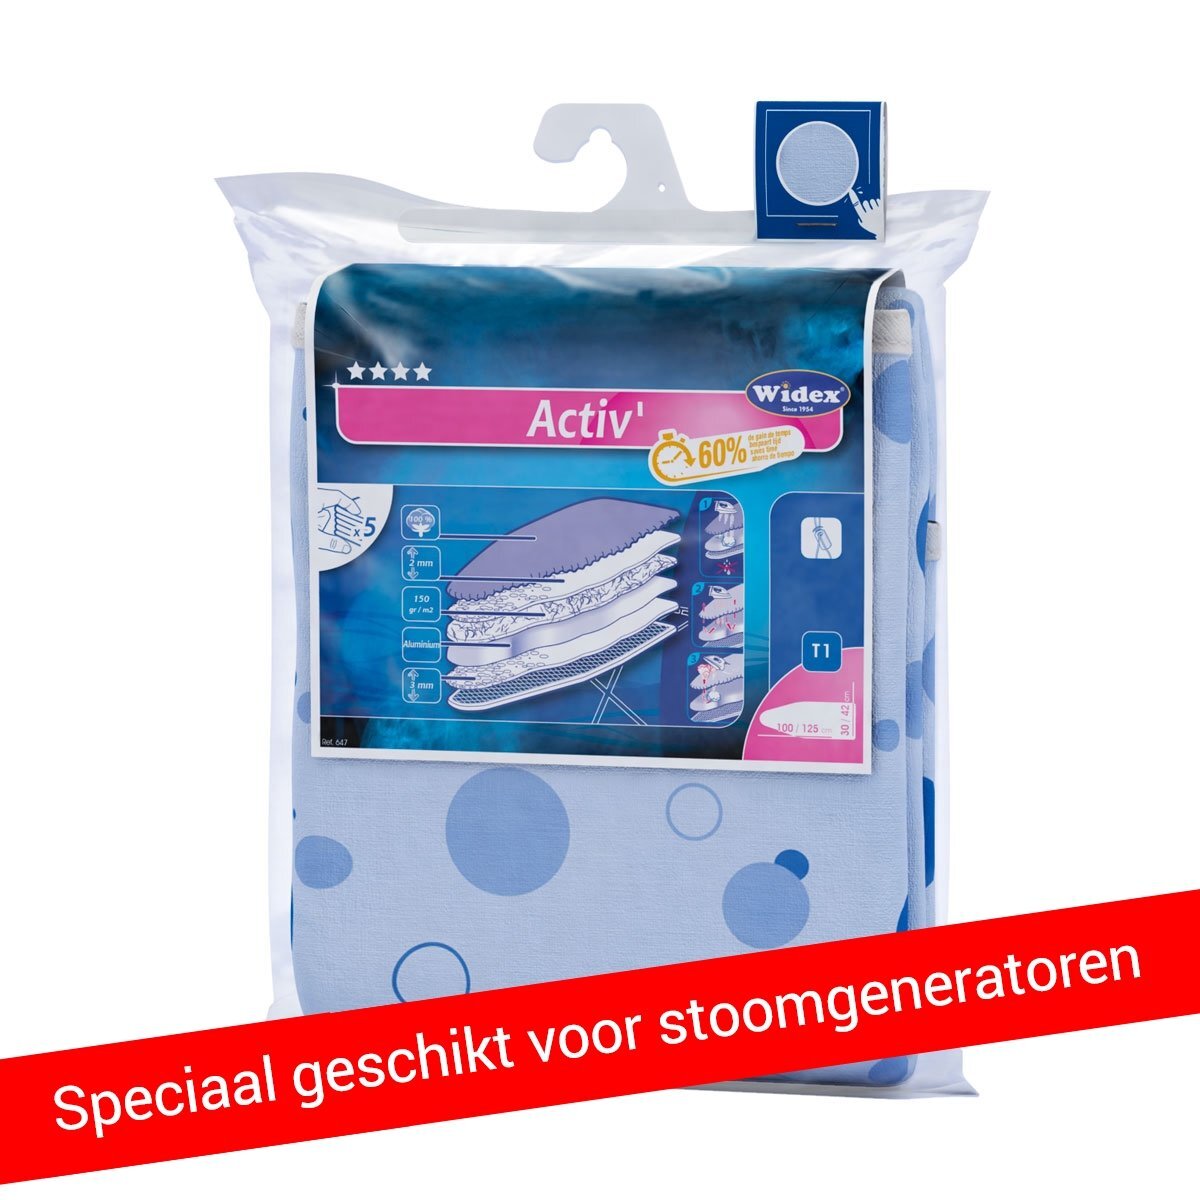 Widex Strijkplankovertrek.nl - Activ Stoom T1 Strijkplankovertrek speciaal geschikt voor stoomgeneratoren / stoomunits